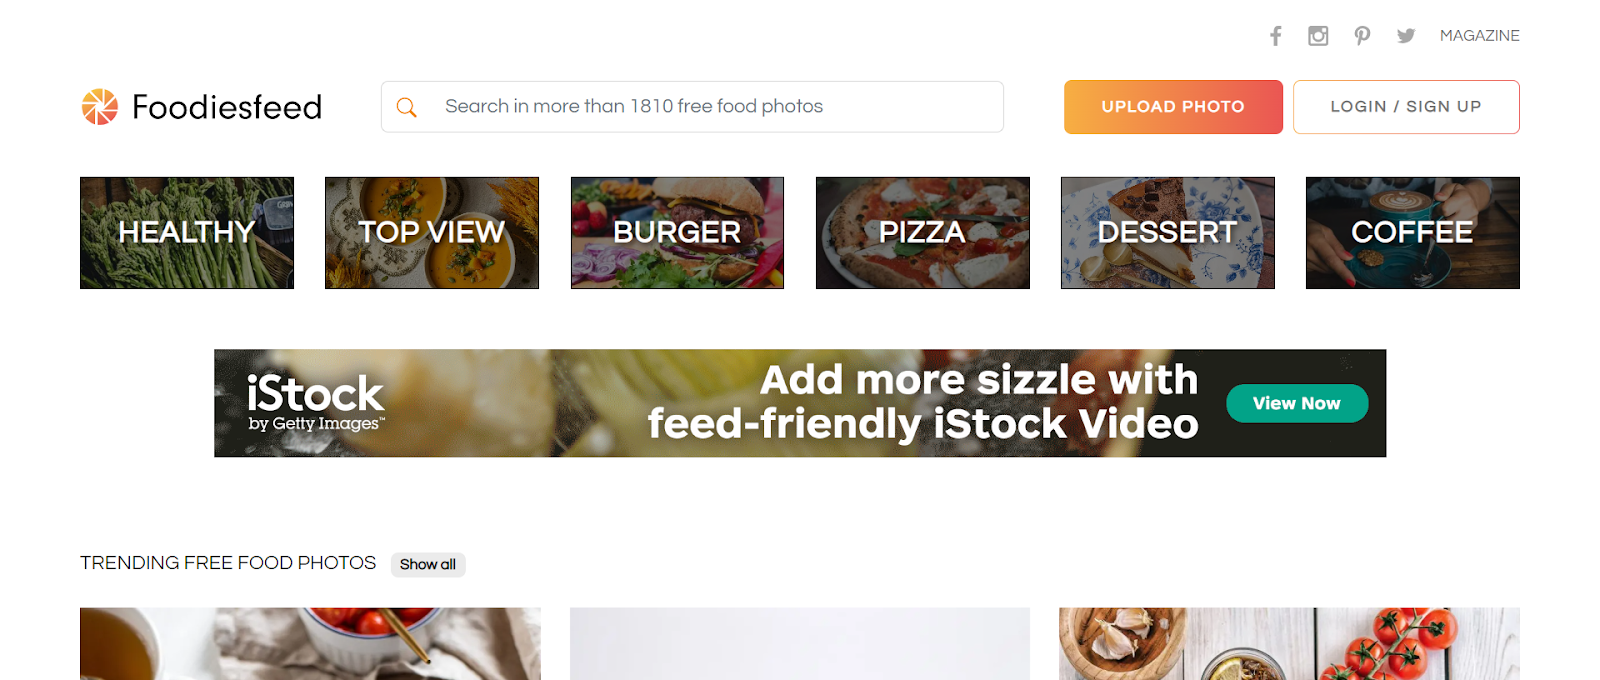 foodies feed website